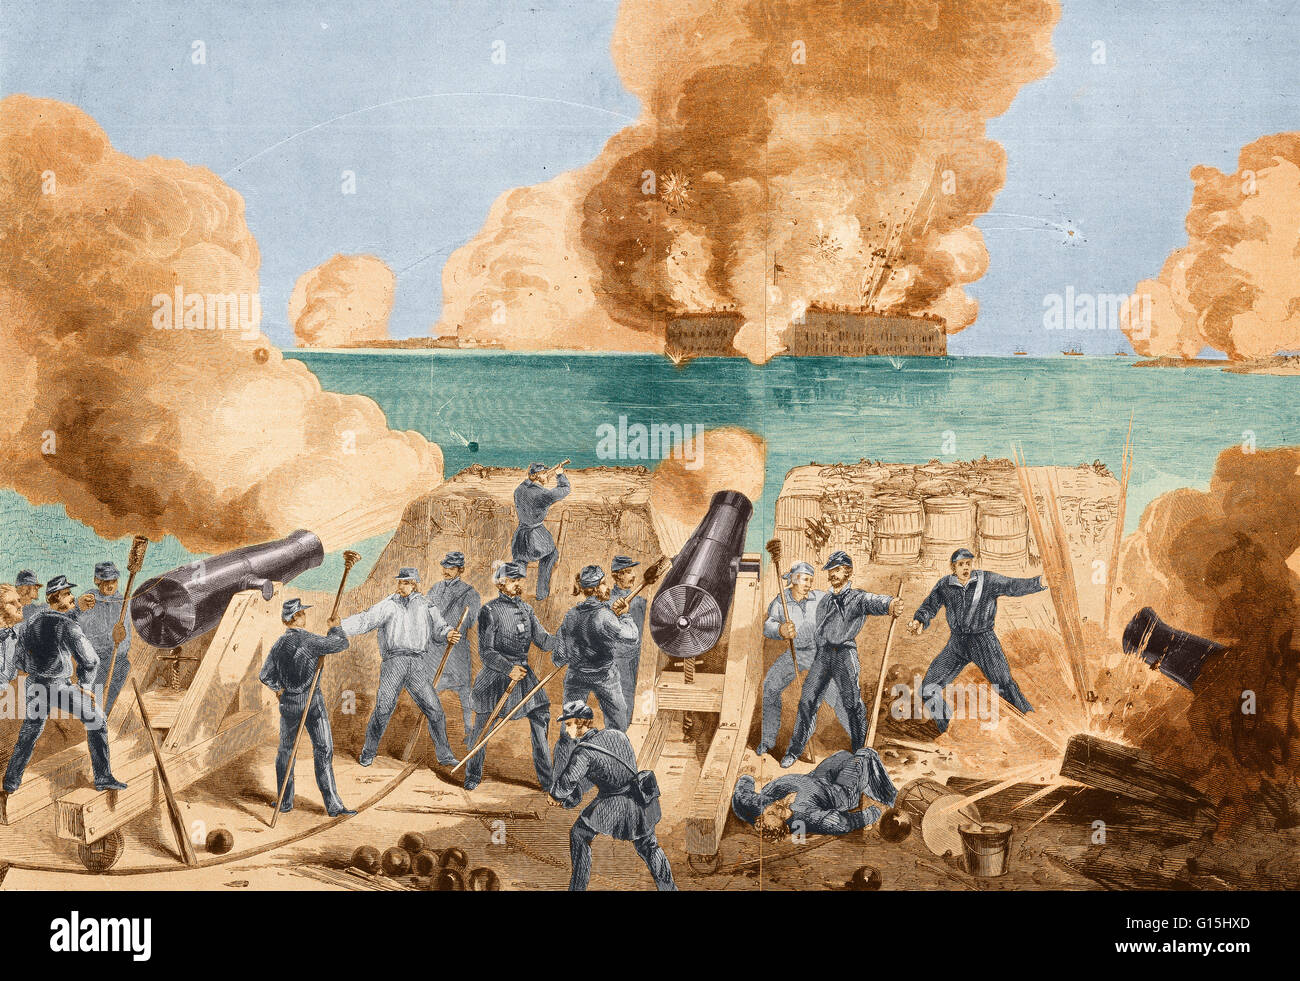 Renforcement de couleur illustration de la Bataille de Fort Sumter. En avril 1861, la bataille de Fort Sumter en Caroline du Sud a commencé la guerre civile américaine. Confederate Brig. Le général Beauregard a exigé la reddition du Fort Sumter. Lorsque le Major Anderson refusé Banque D'Images